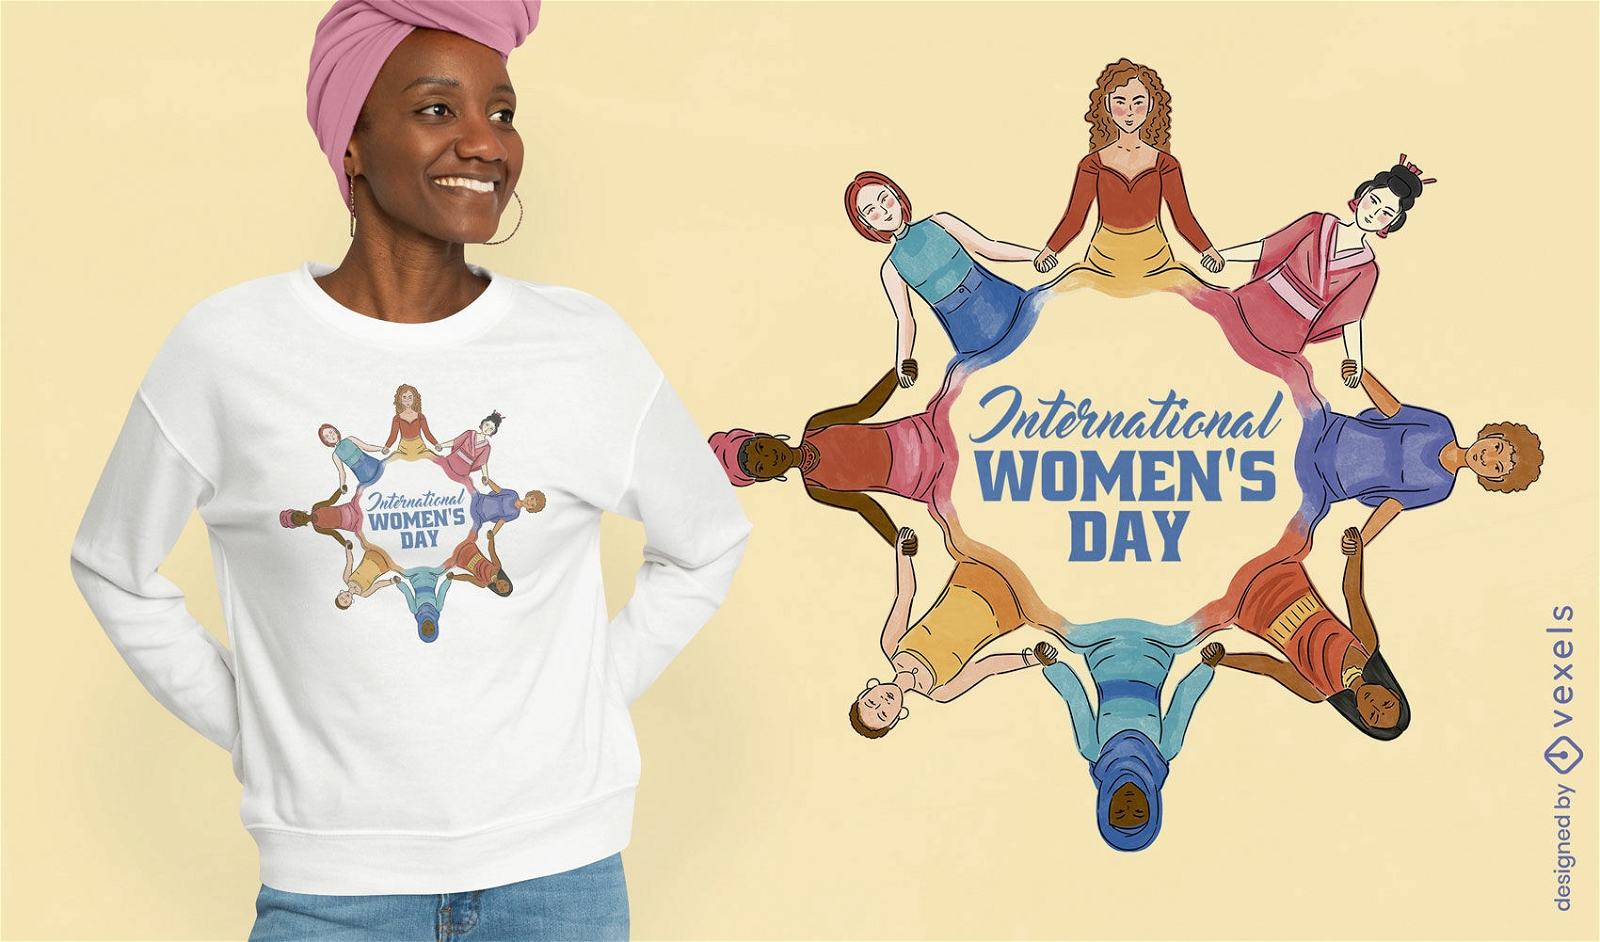 International Women's Day t-shirt design